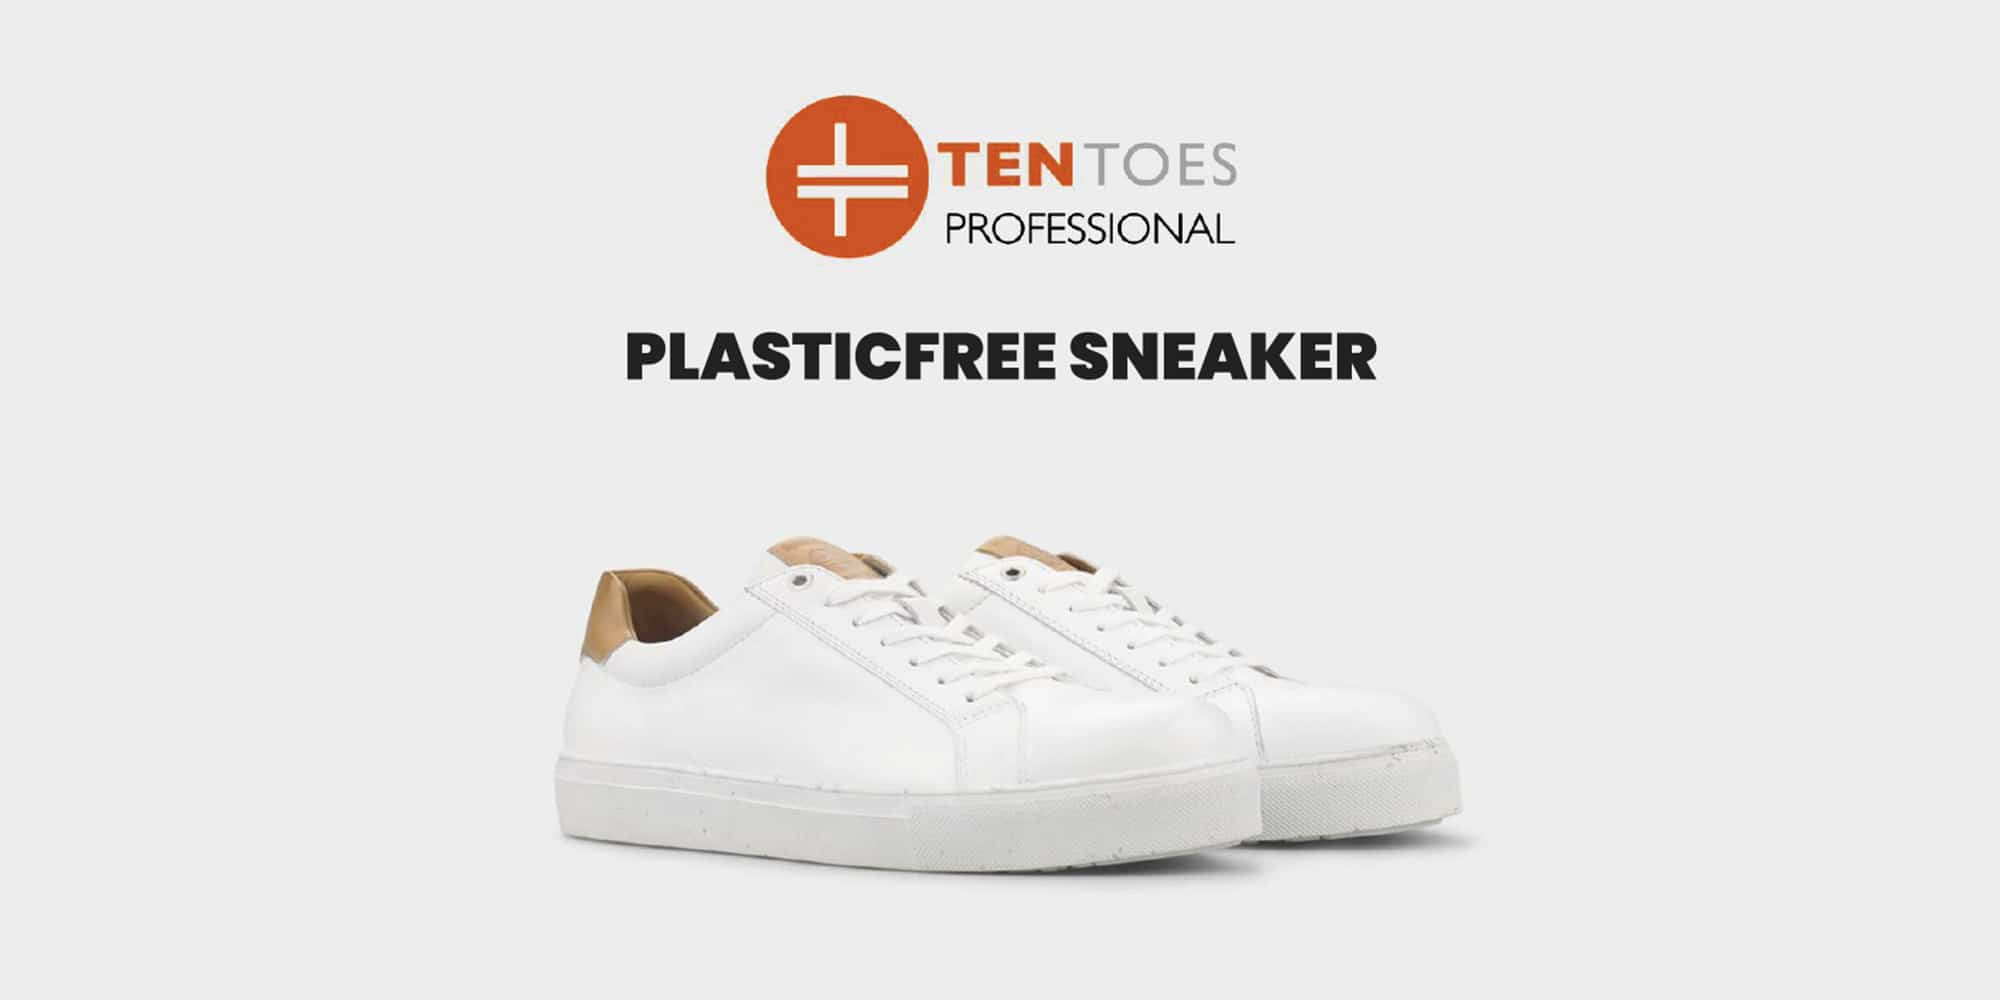 TenToes Arbeitsschuhe Sicherheitsschuhe Sneaker Plastic free MSK Shop Arbeitskleidung Berufskleidung